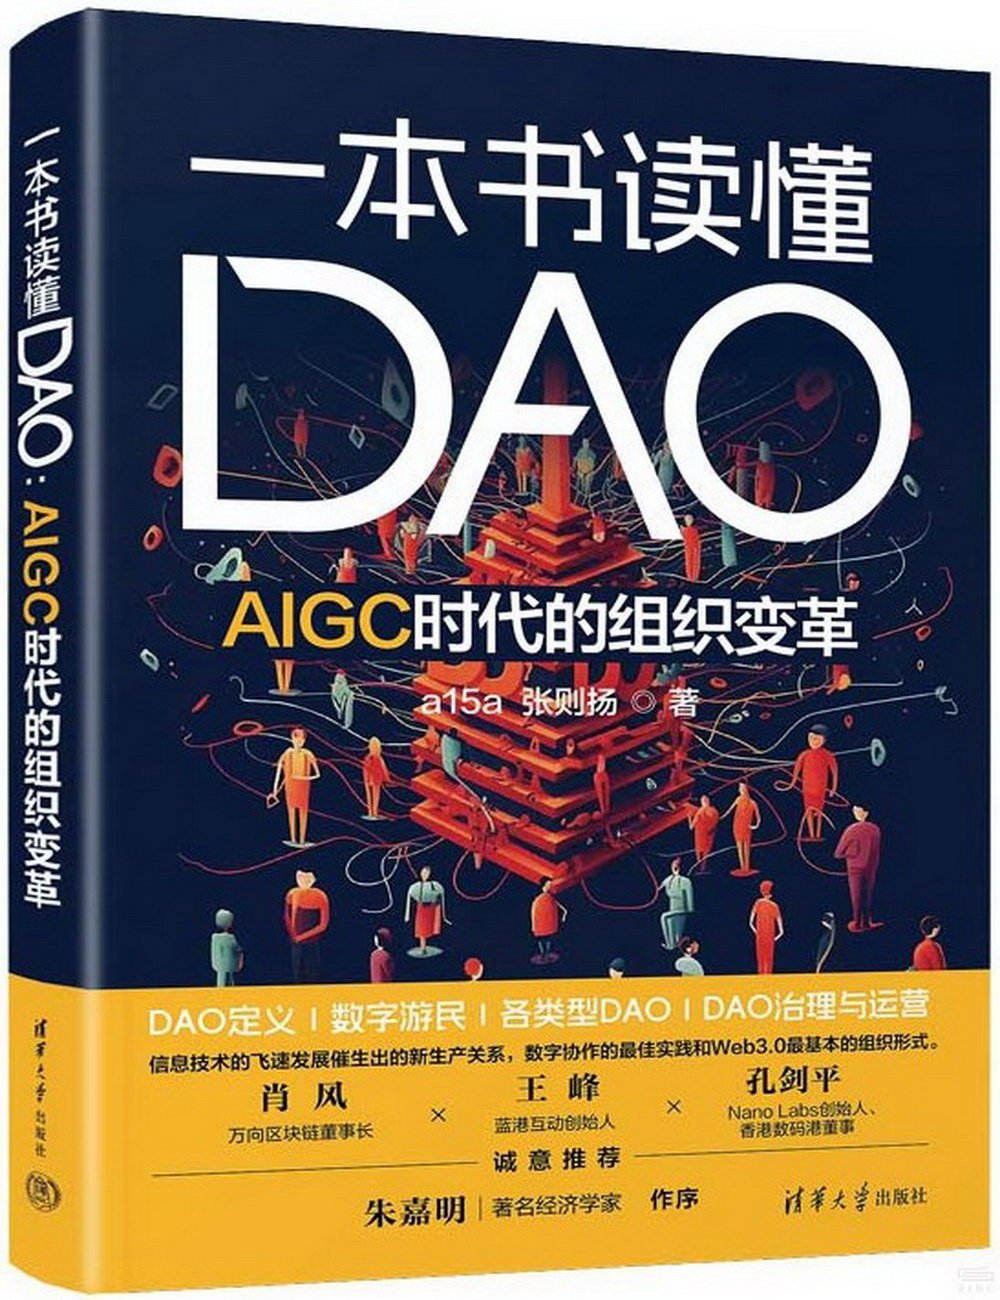 一本書讀懂DAO：AIGC時代的組織變革